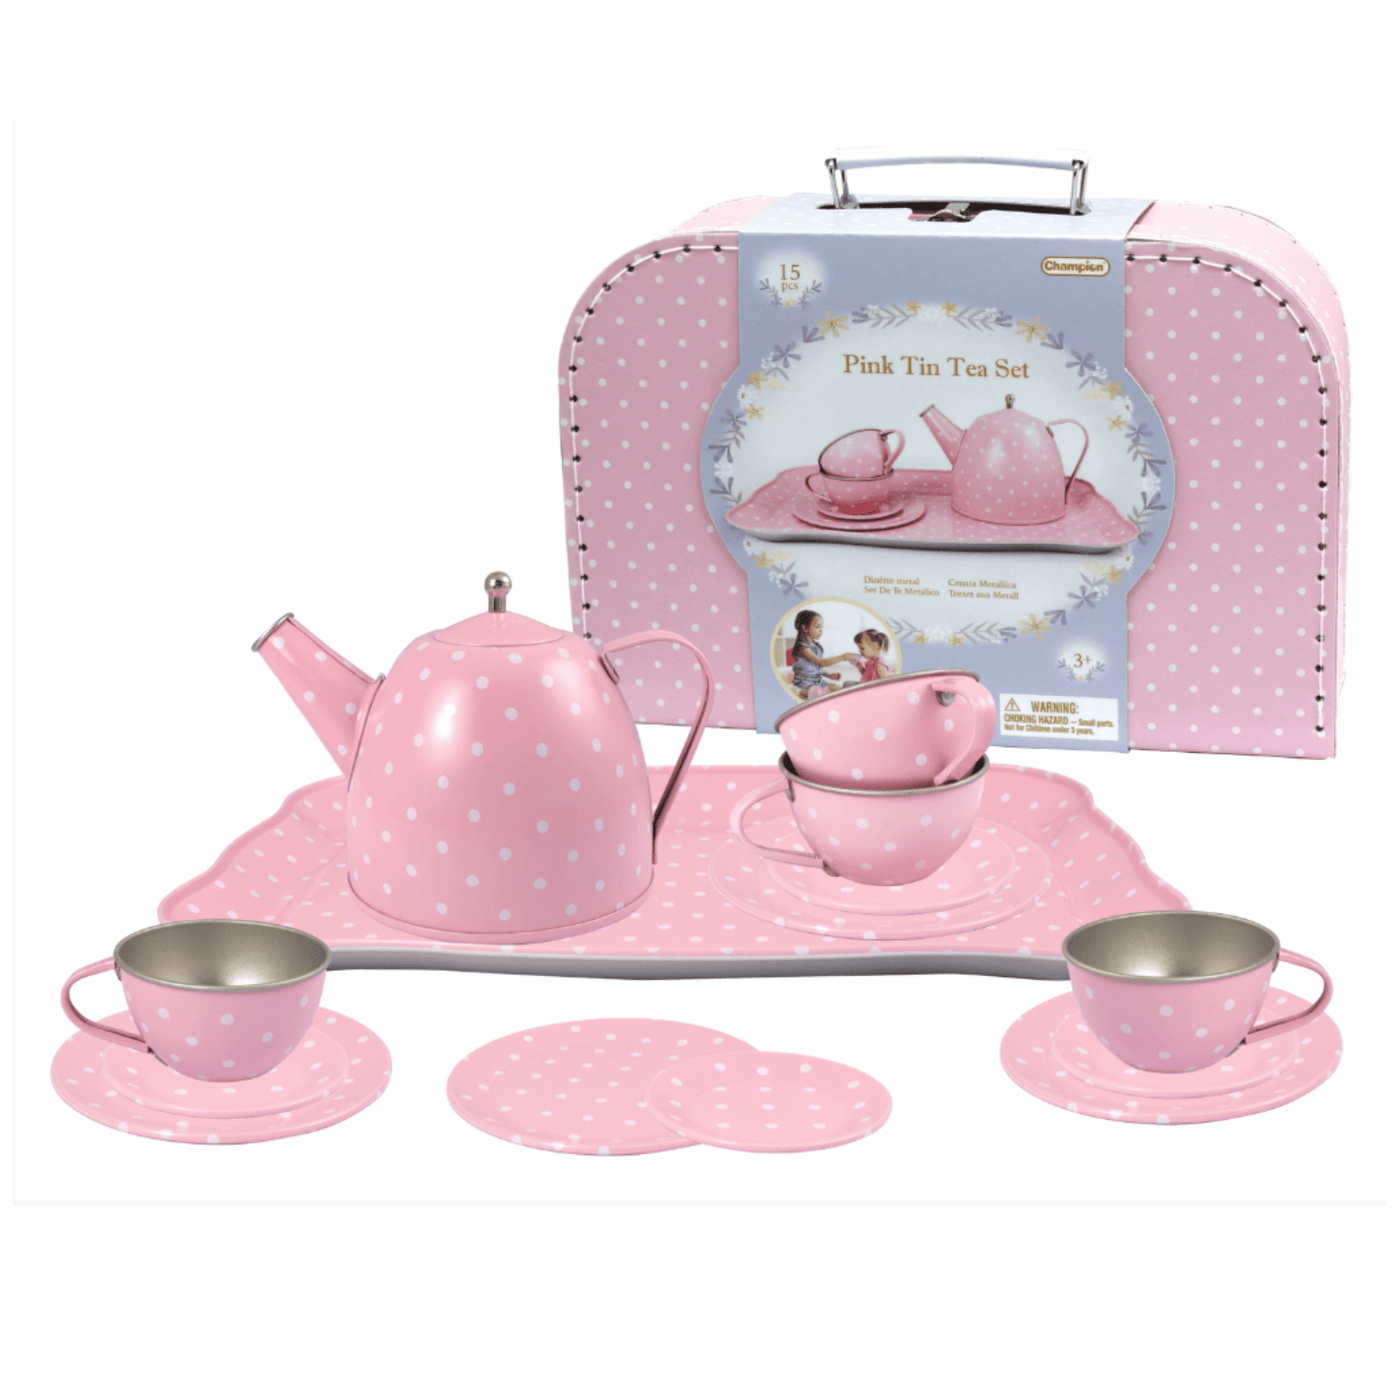 Pink Tin Tea Set In Suitcase